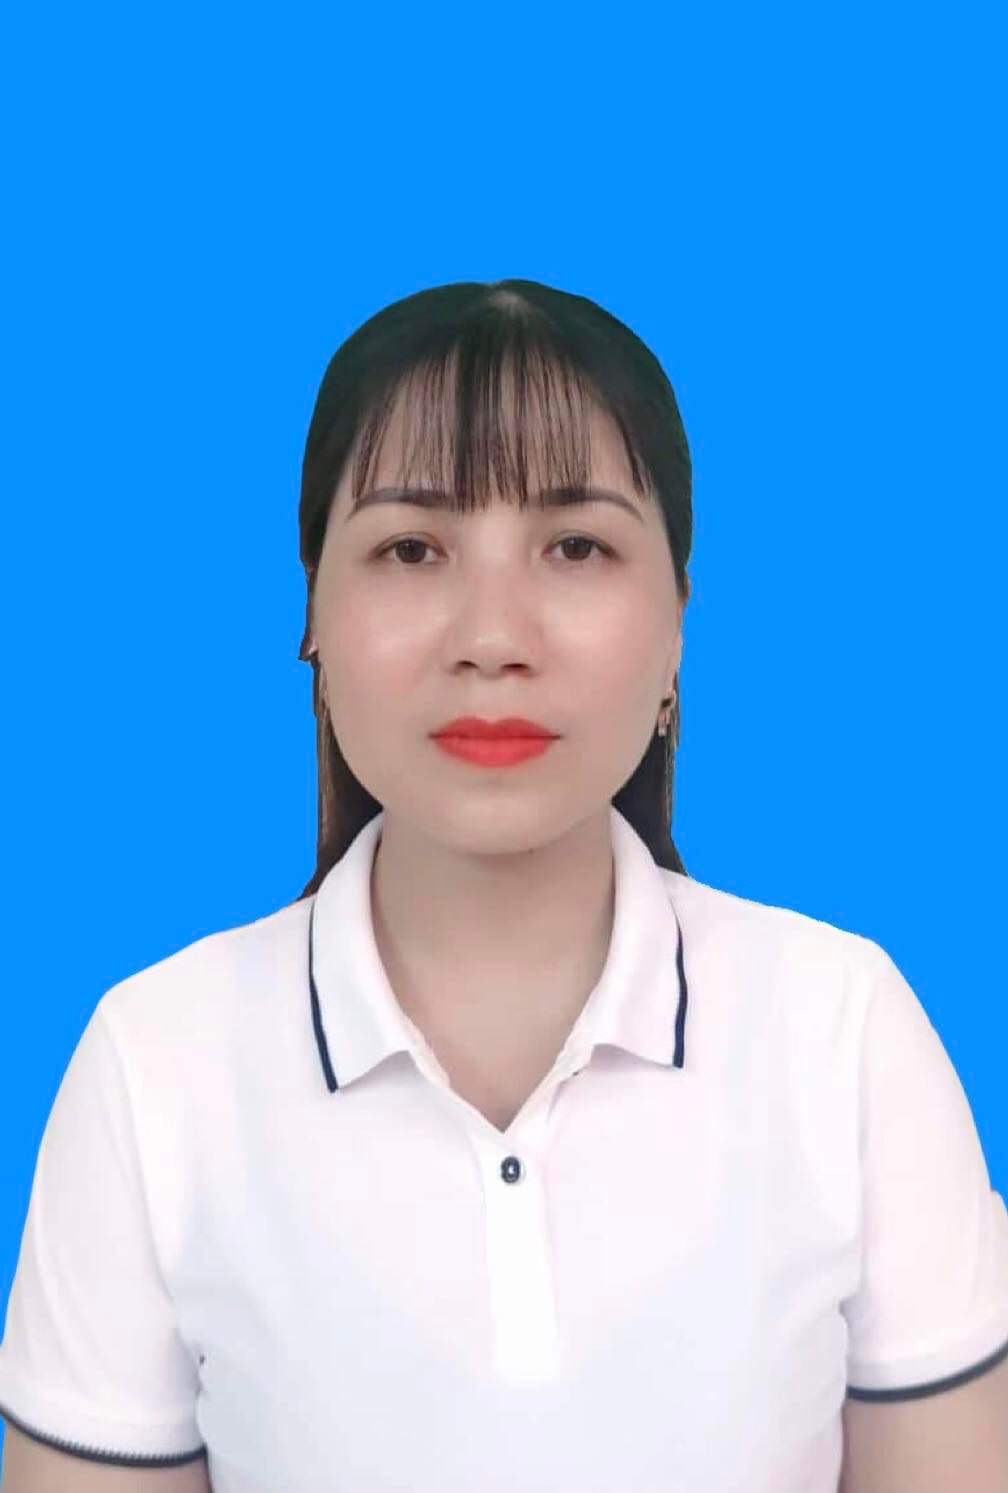 Nguyễn Thị Ngân